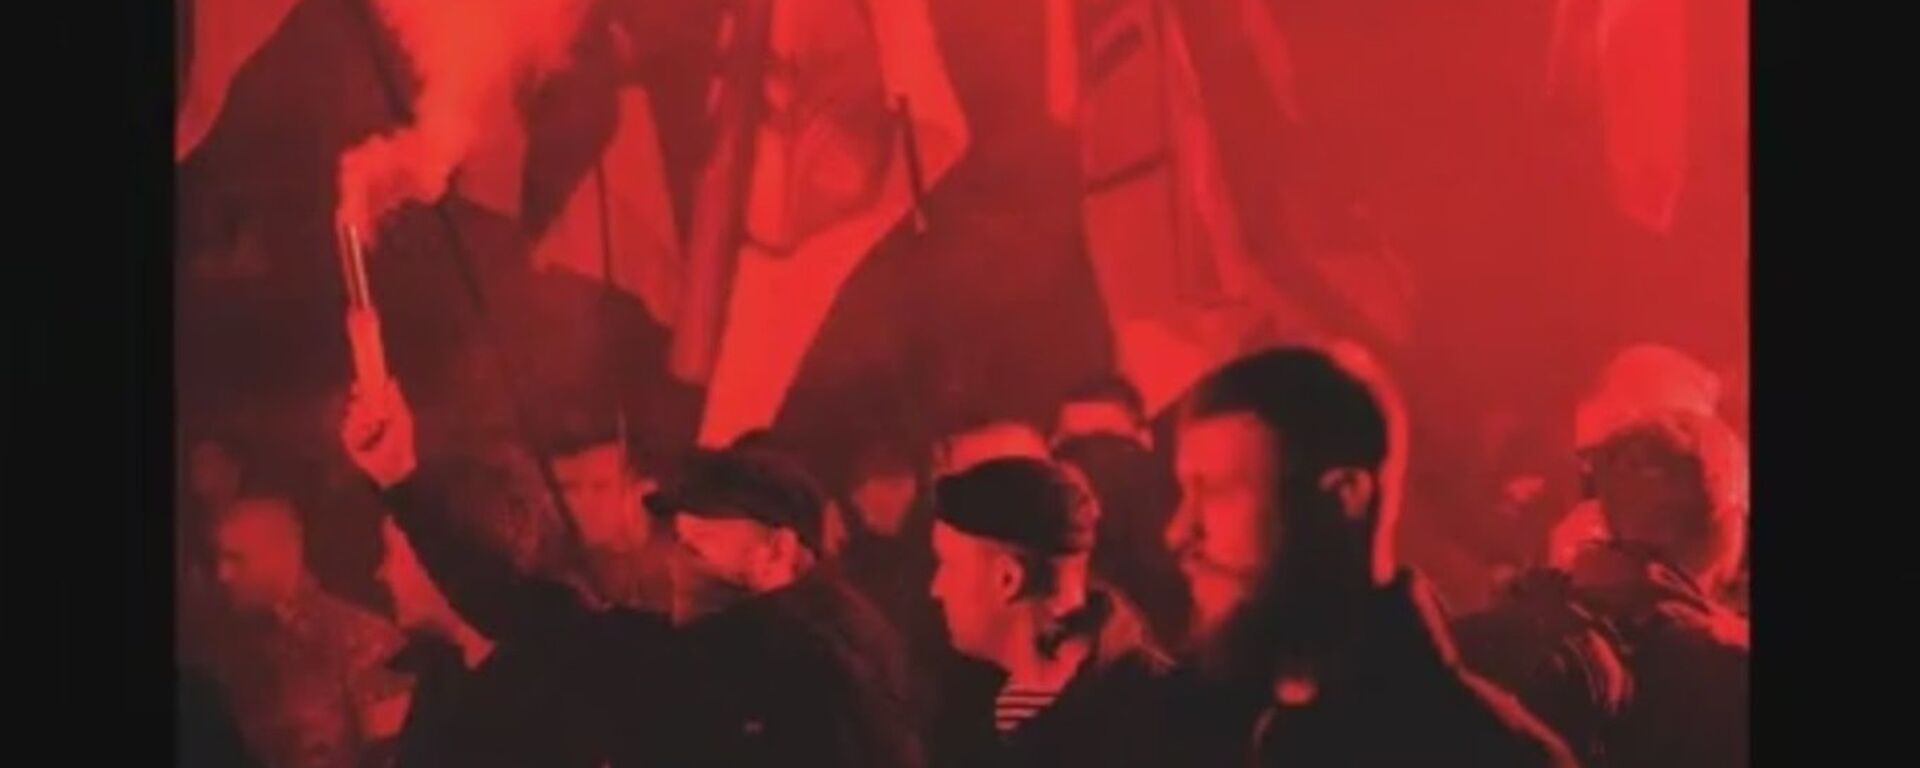 Marcha de los héroes, los veteranos del batallón de Azov, 2015. Serguéi Sanovski, en el centro - Sputnik Mundo, 1920, 27.06.2018